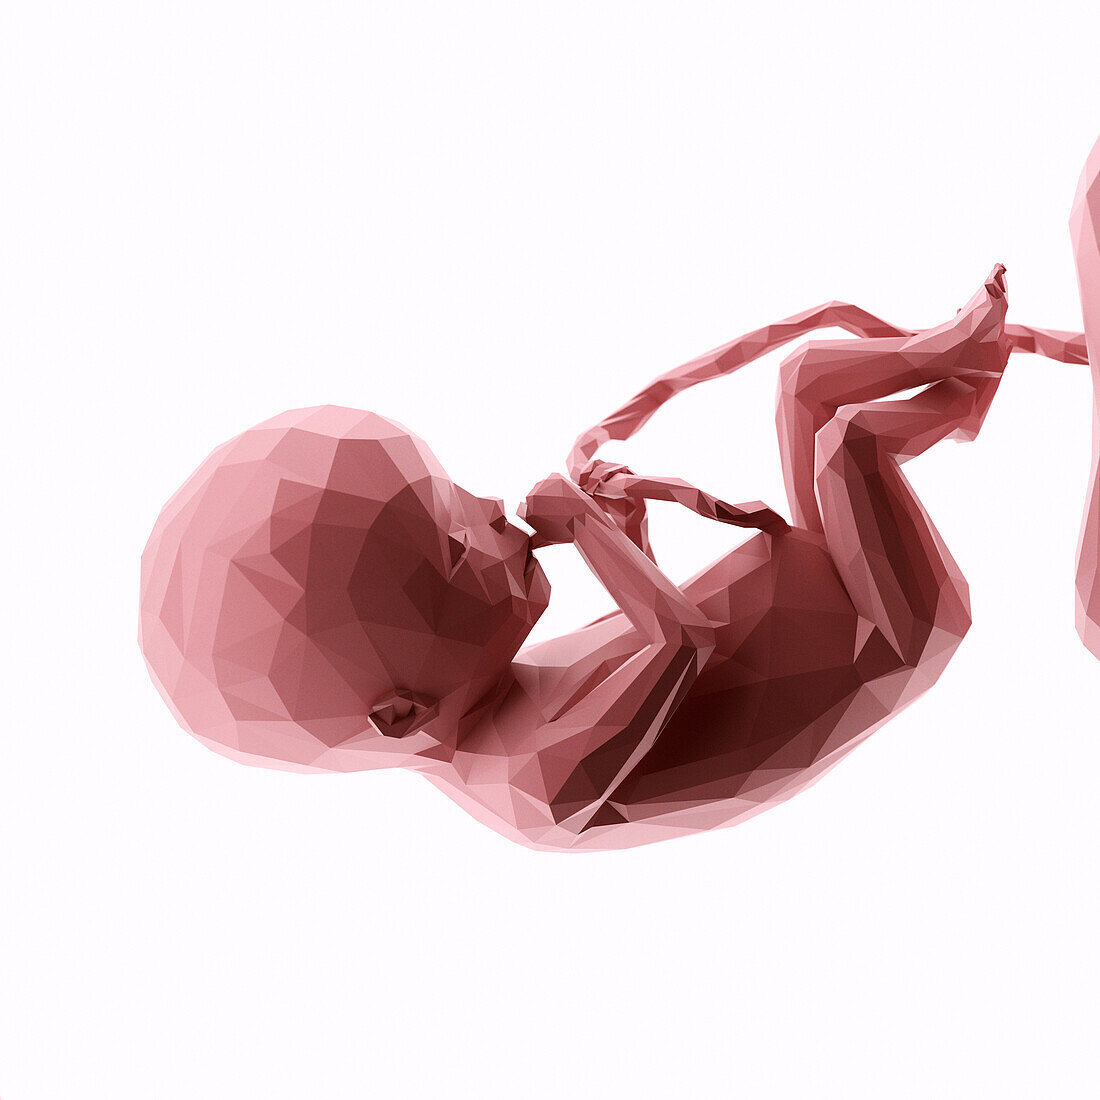 Human fetus at week 20, abstract illustration